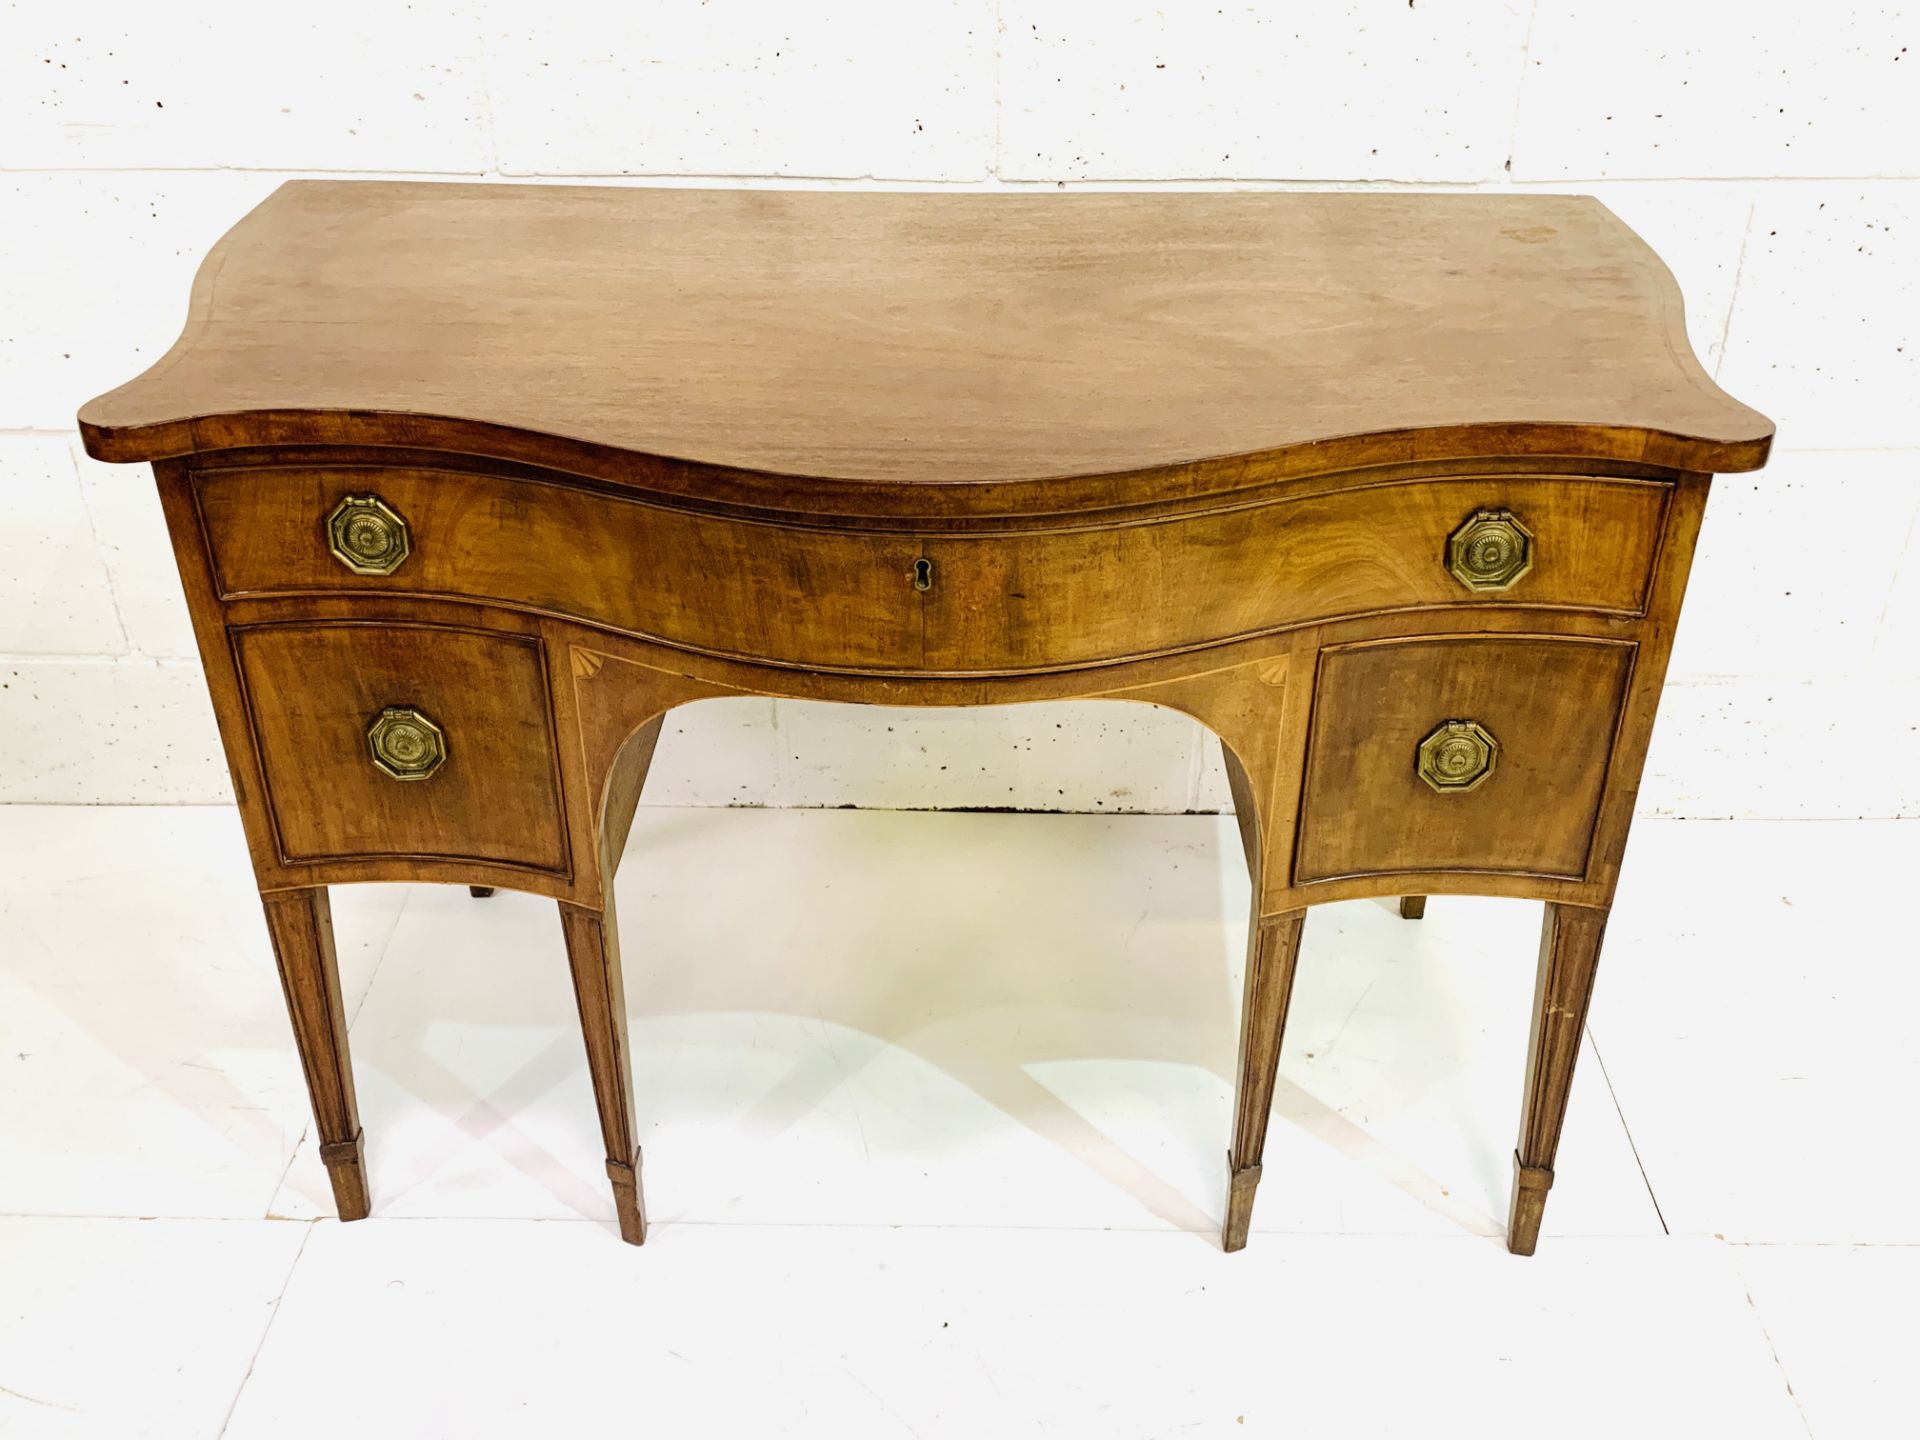 Regency style mahogany writing table